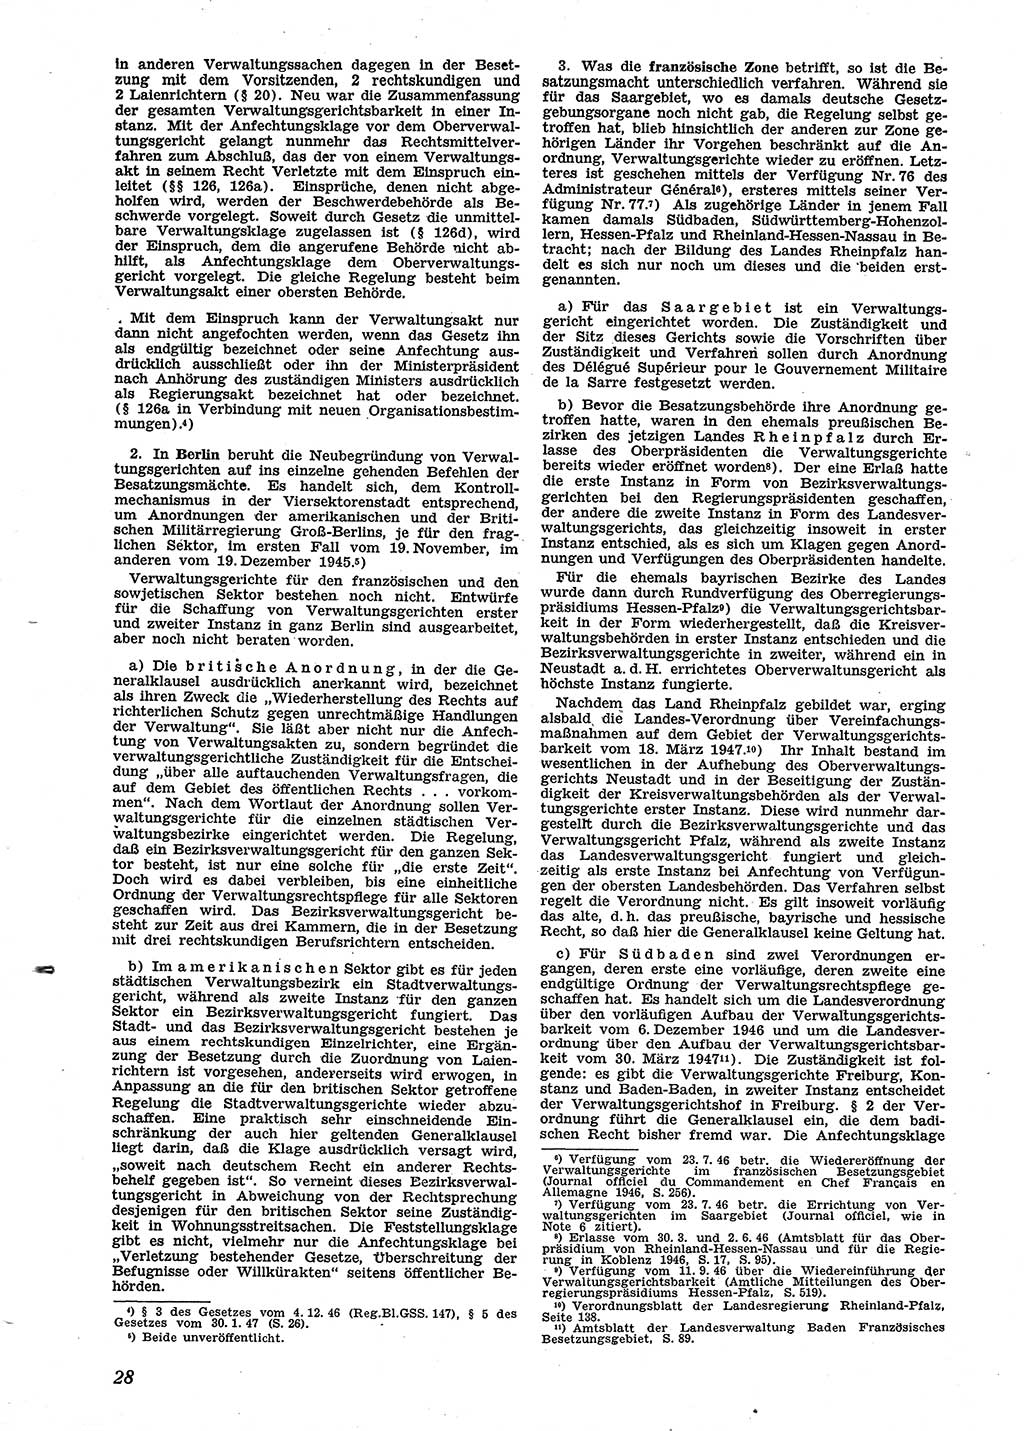 Neue Justiz (NJ), Zeitschrift für Recht und Rechtswissenschaft [Sowjetische Besatzungszone (SBZ) Deutschland], 2. Jahrgang 1948, Seite 28 (NJ SBZ Dtl. 1948, S. 28)